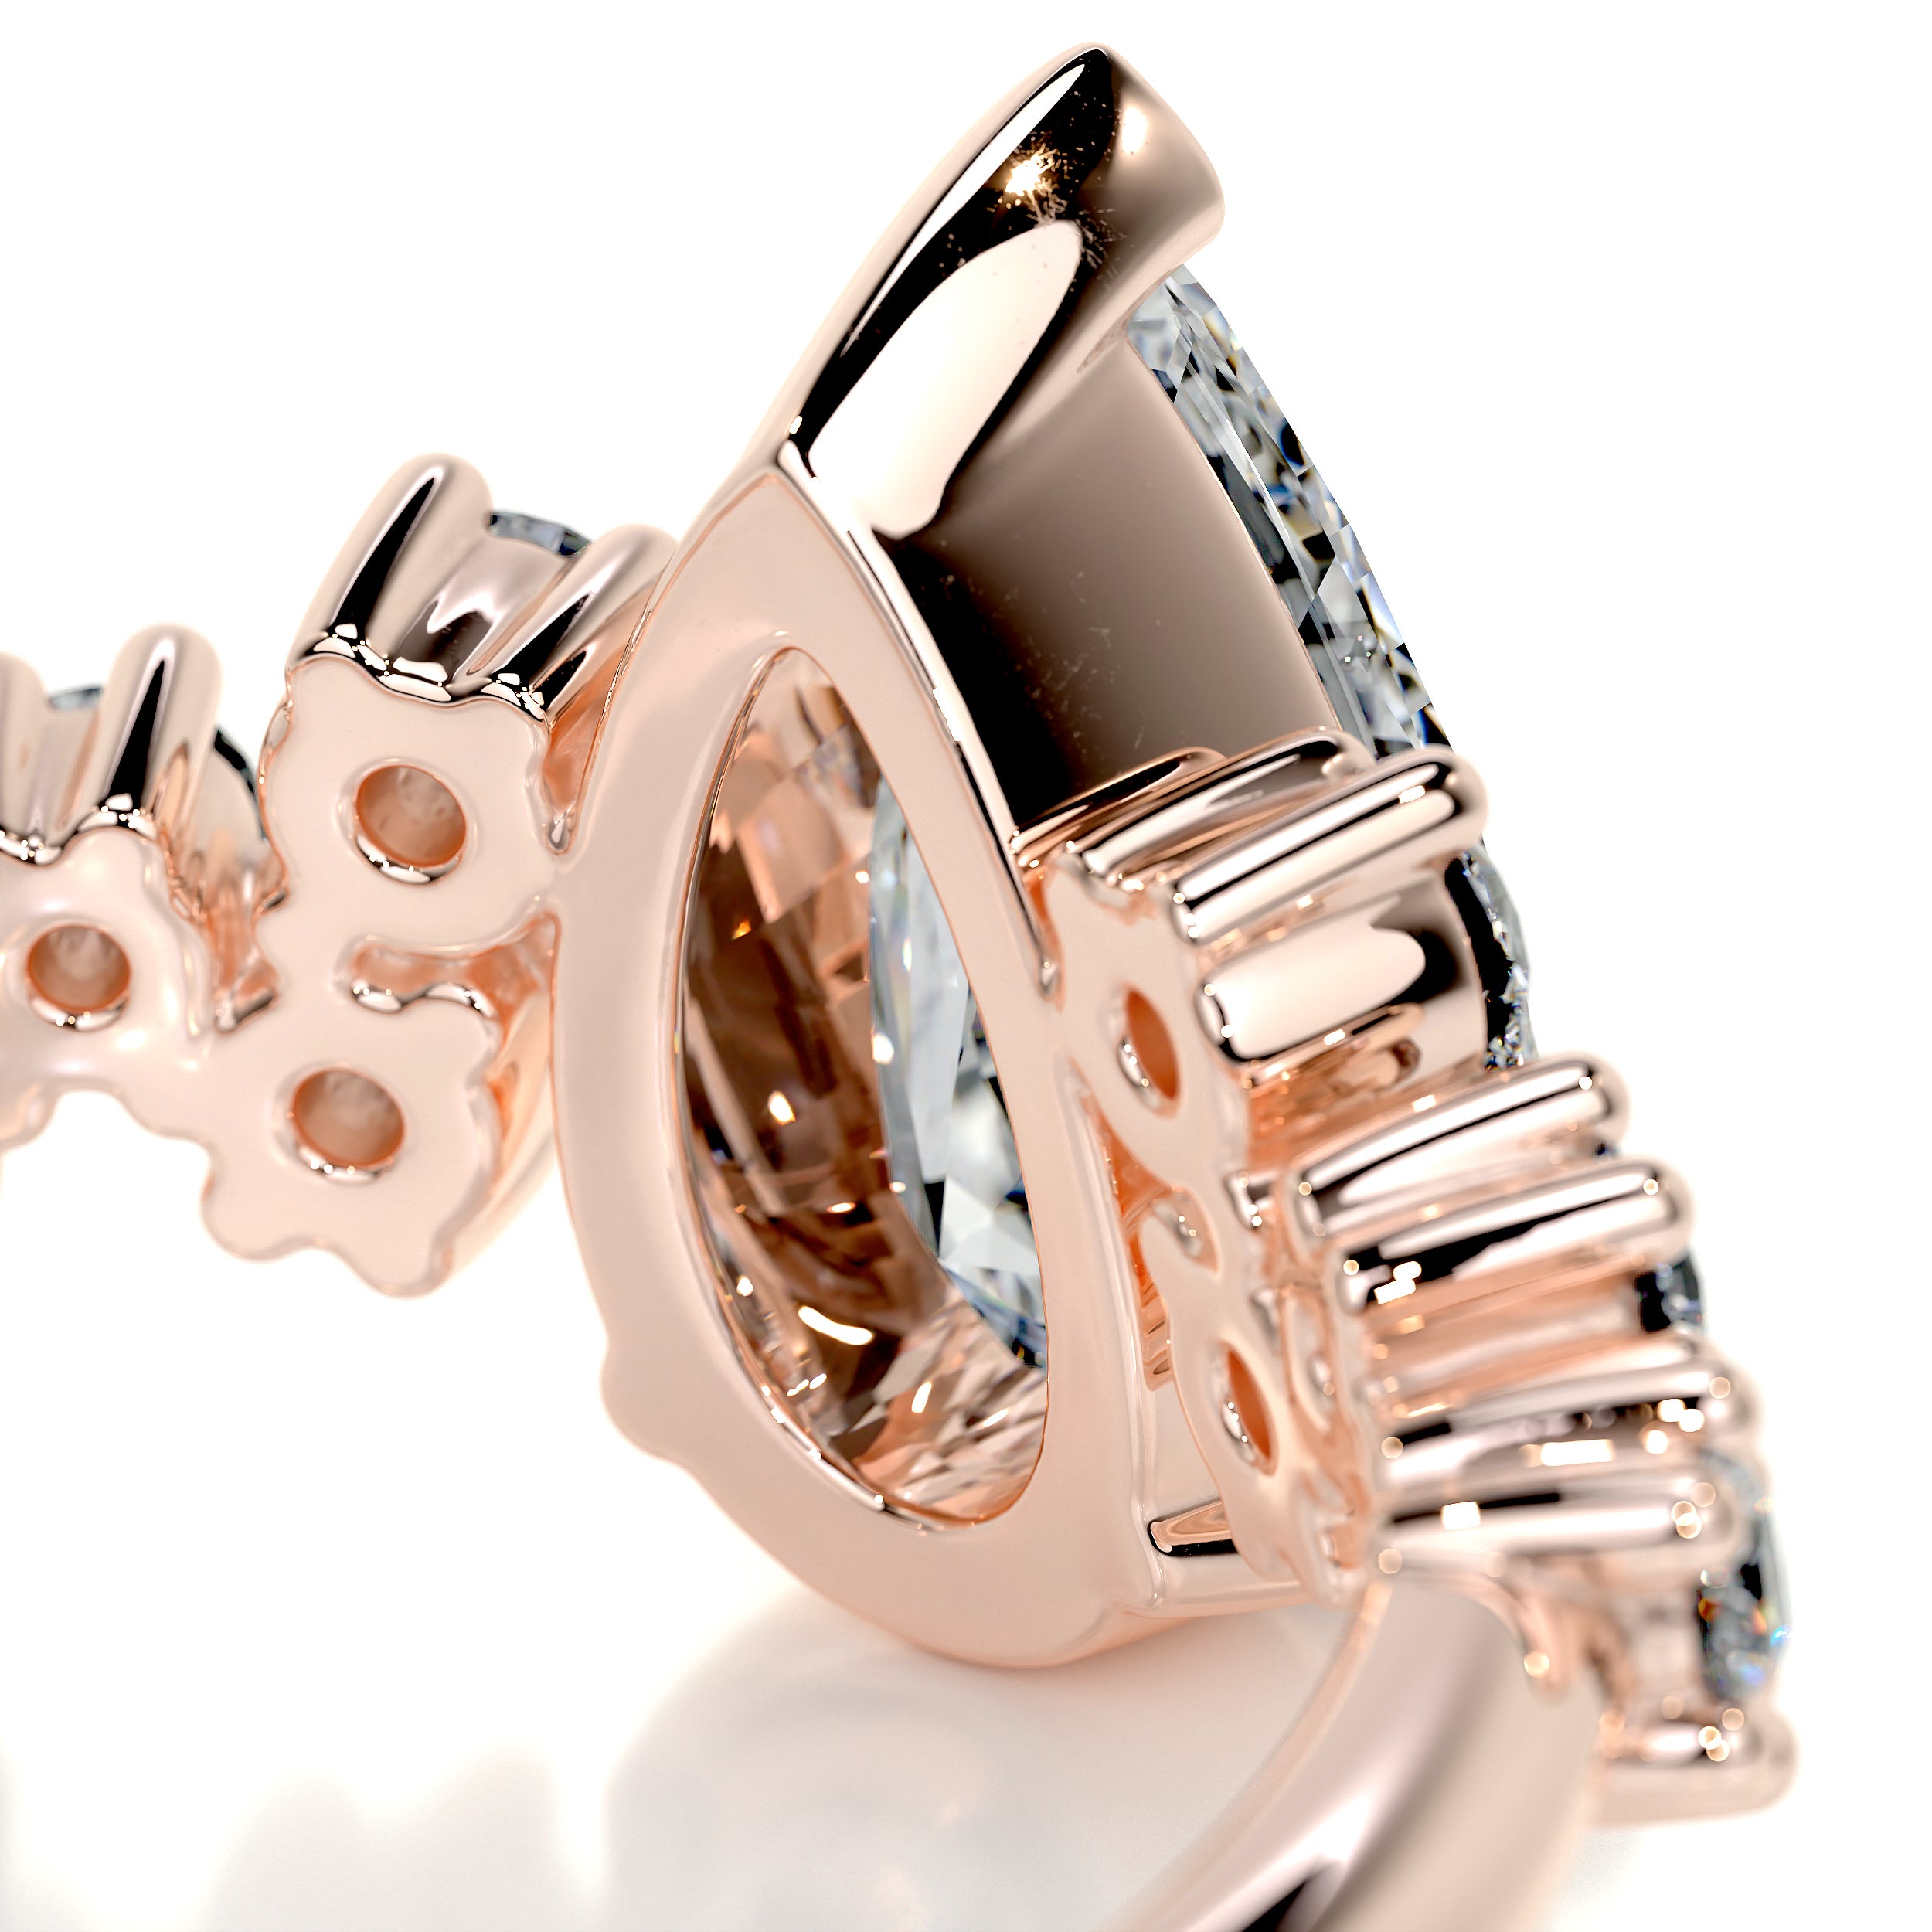 Mabel Diamond Engagement Ring   (1.25 Carat) -14K Rose Gold